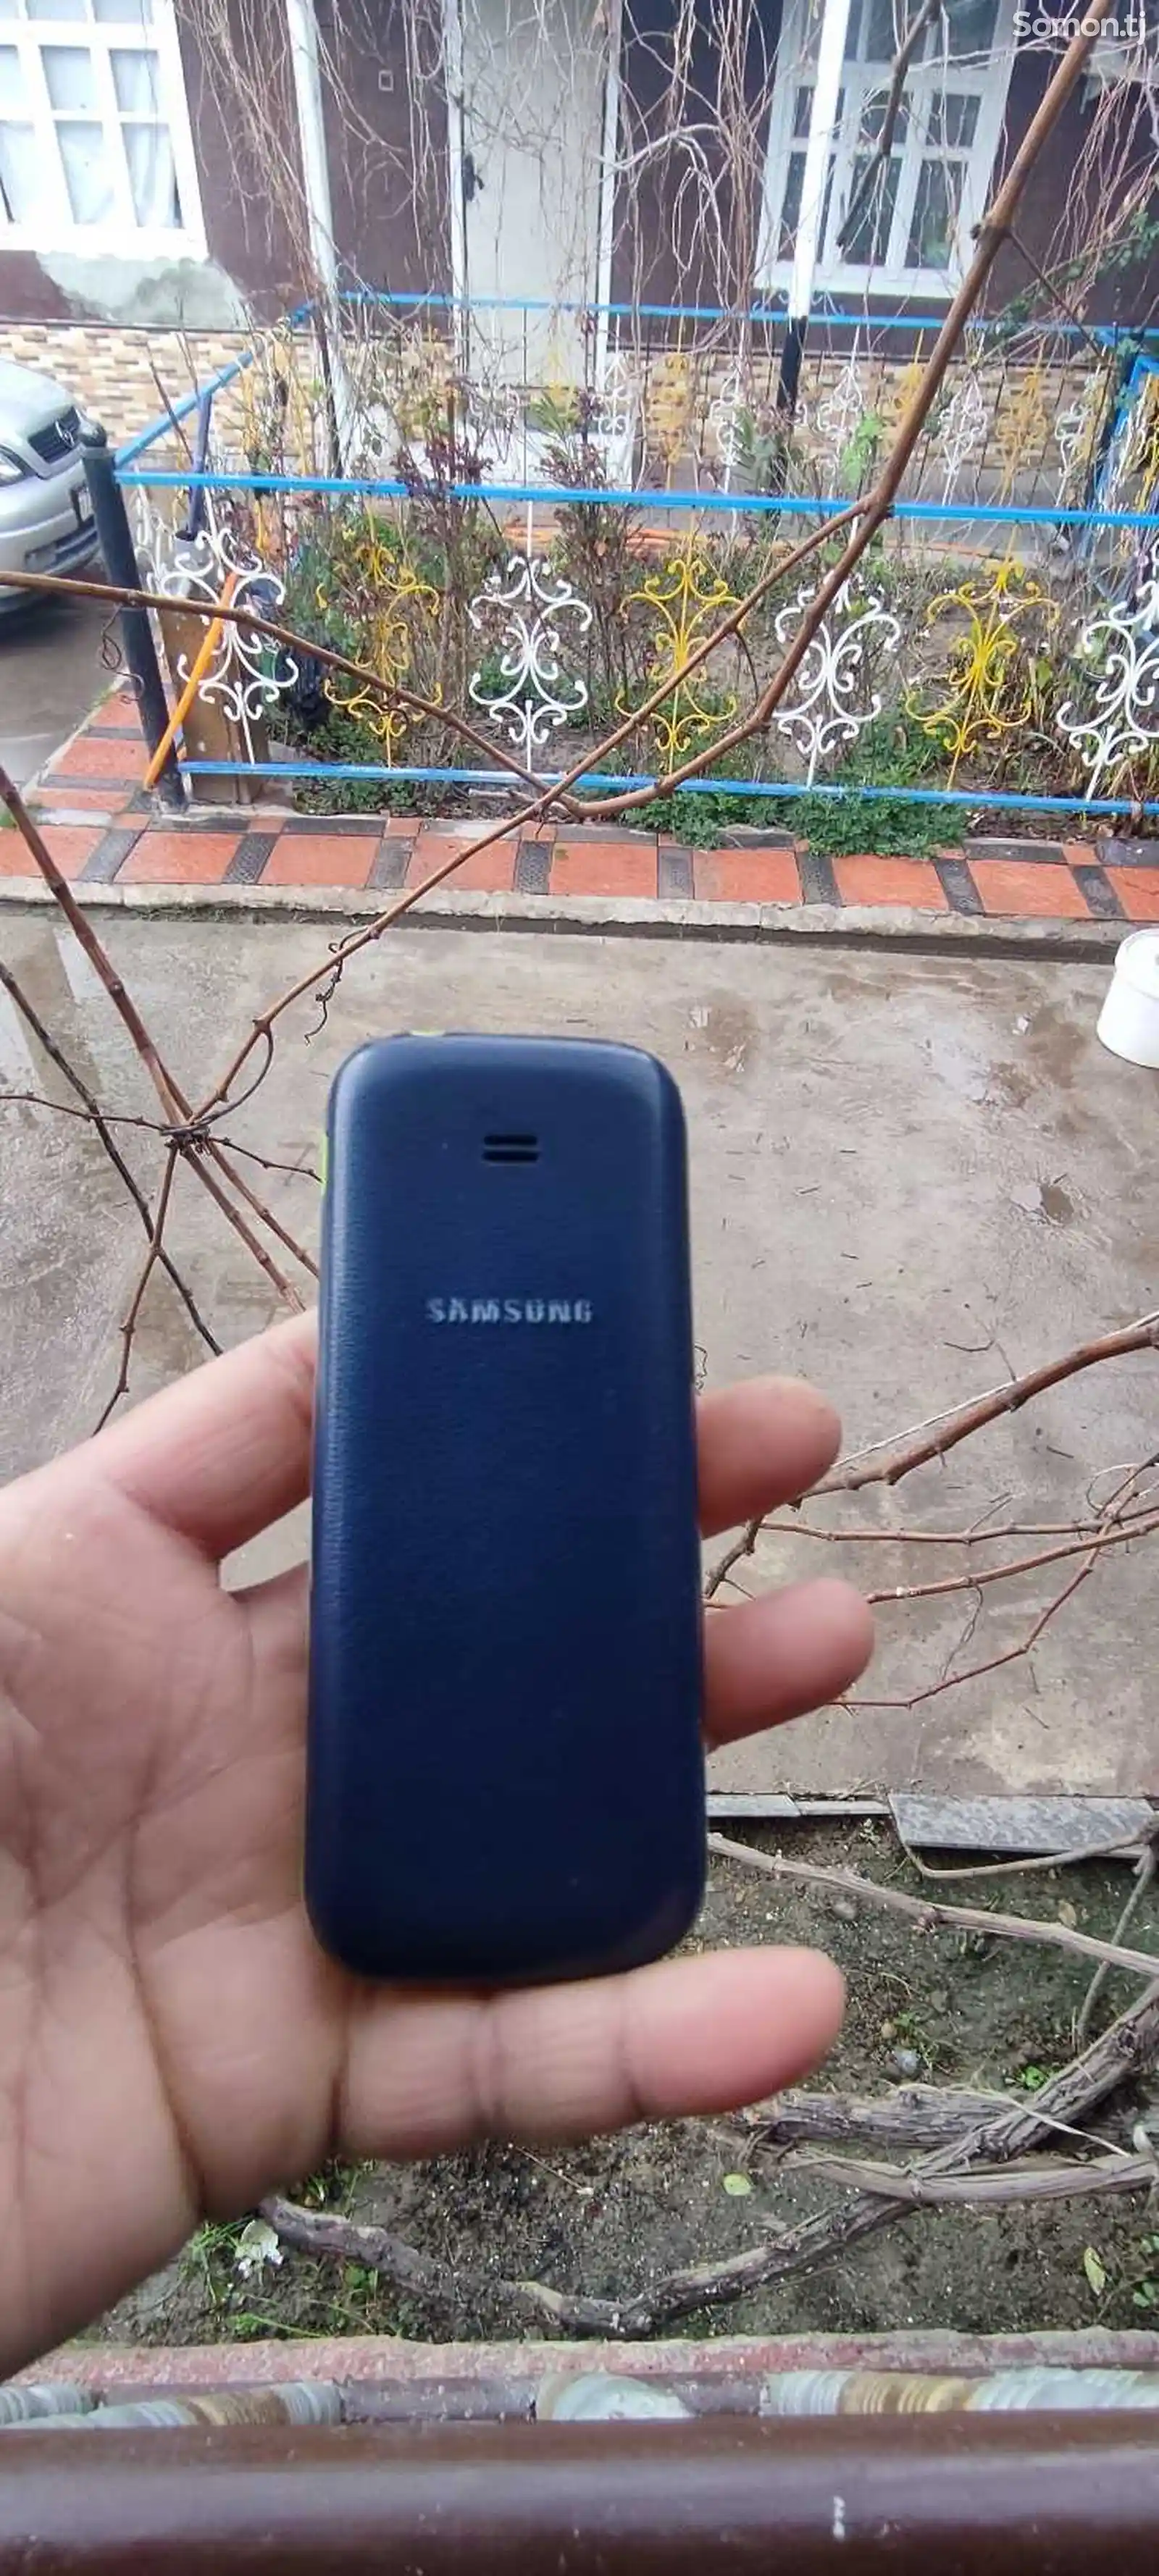 Samsung B310e-2